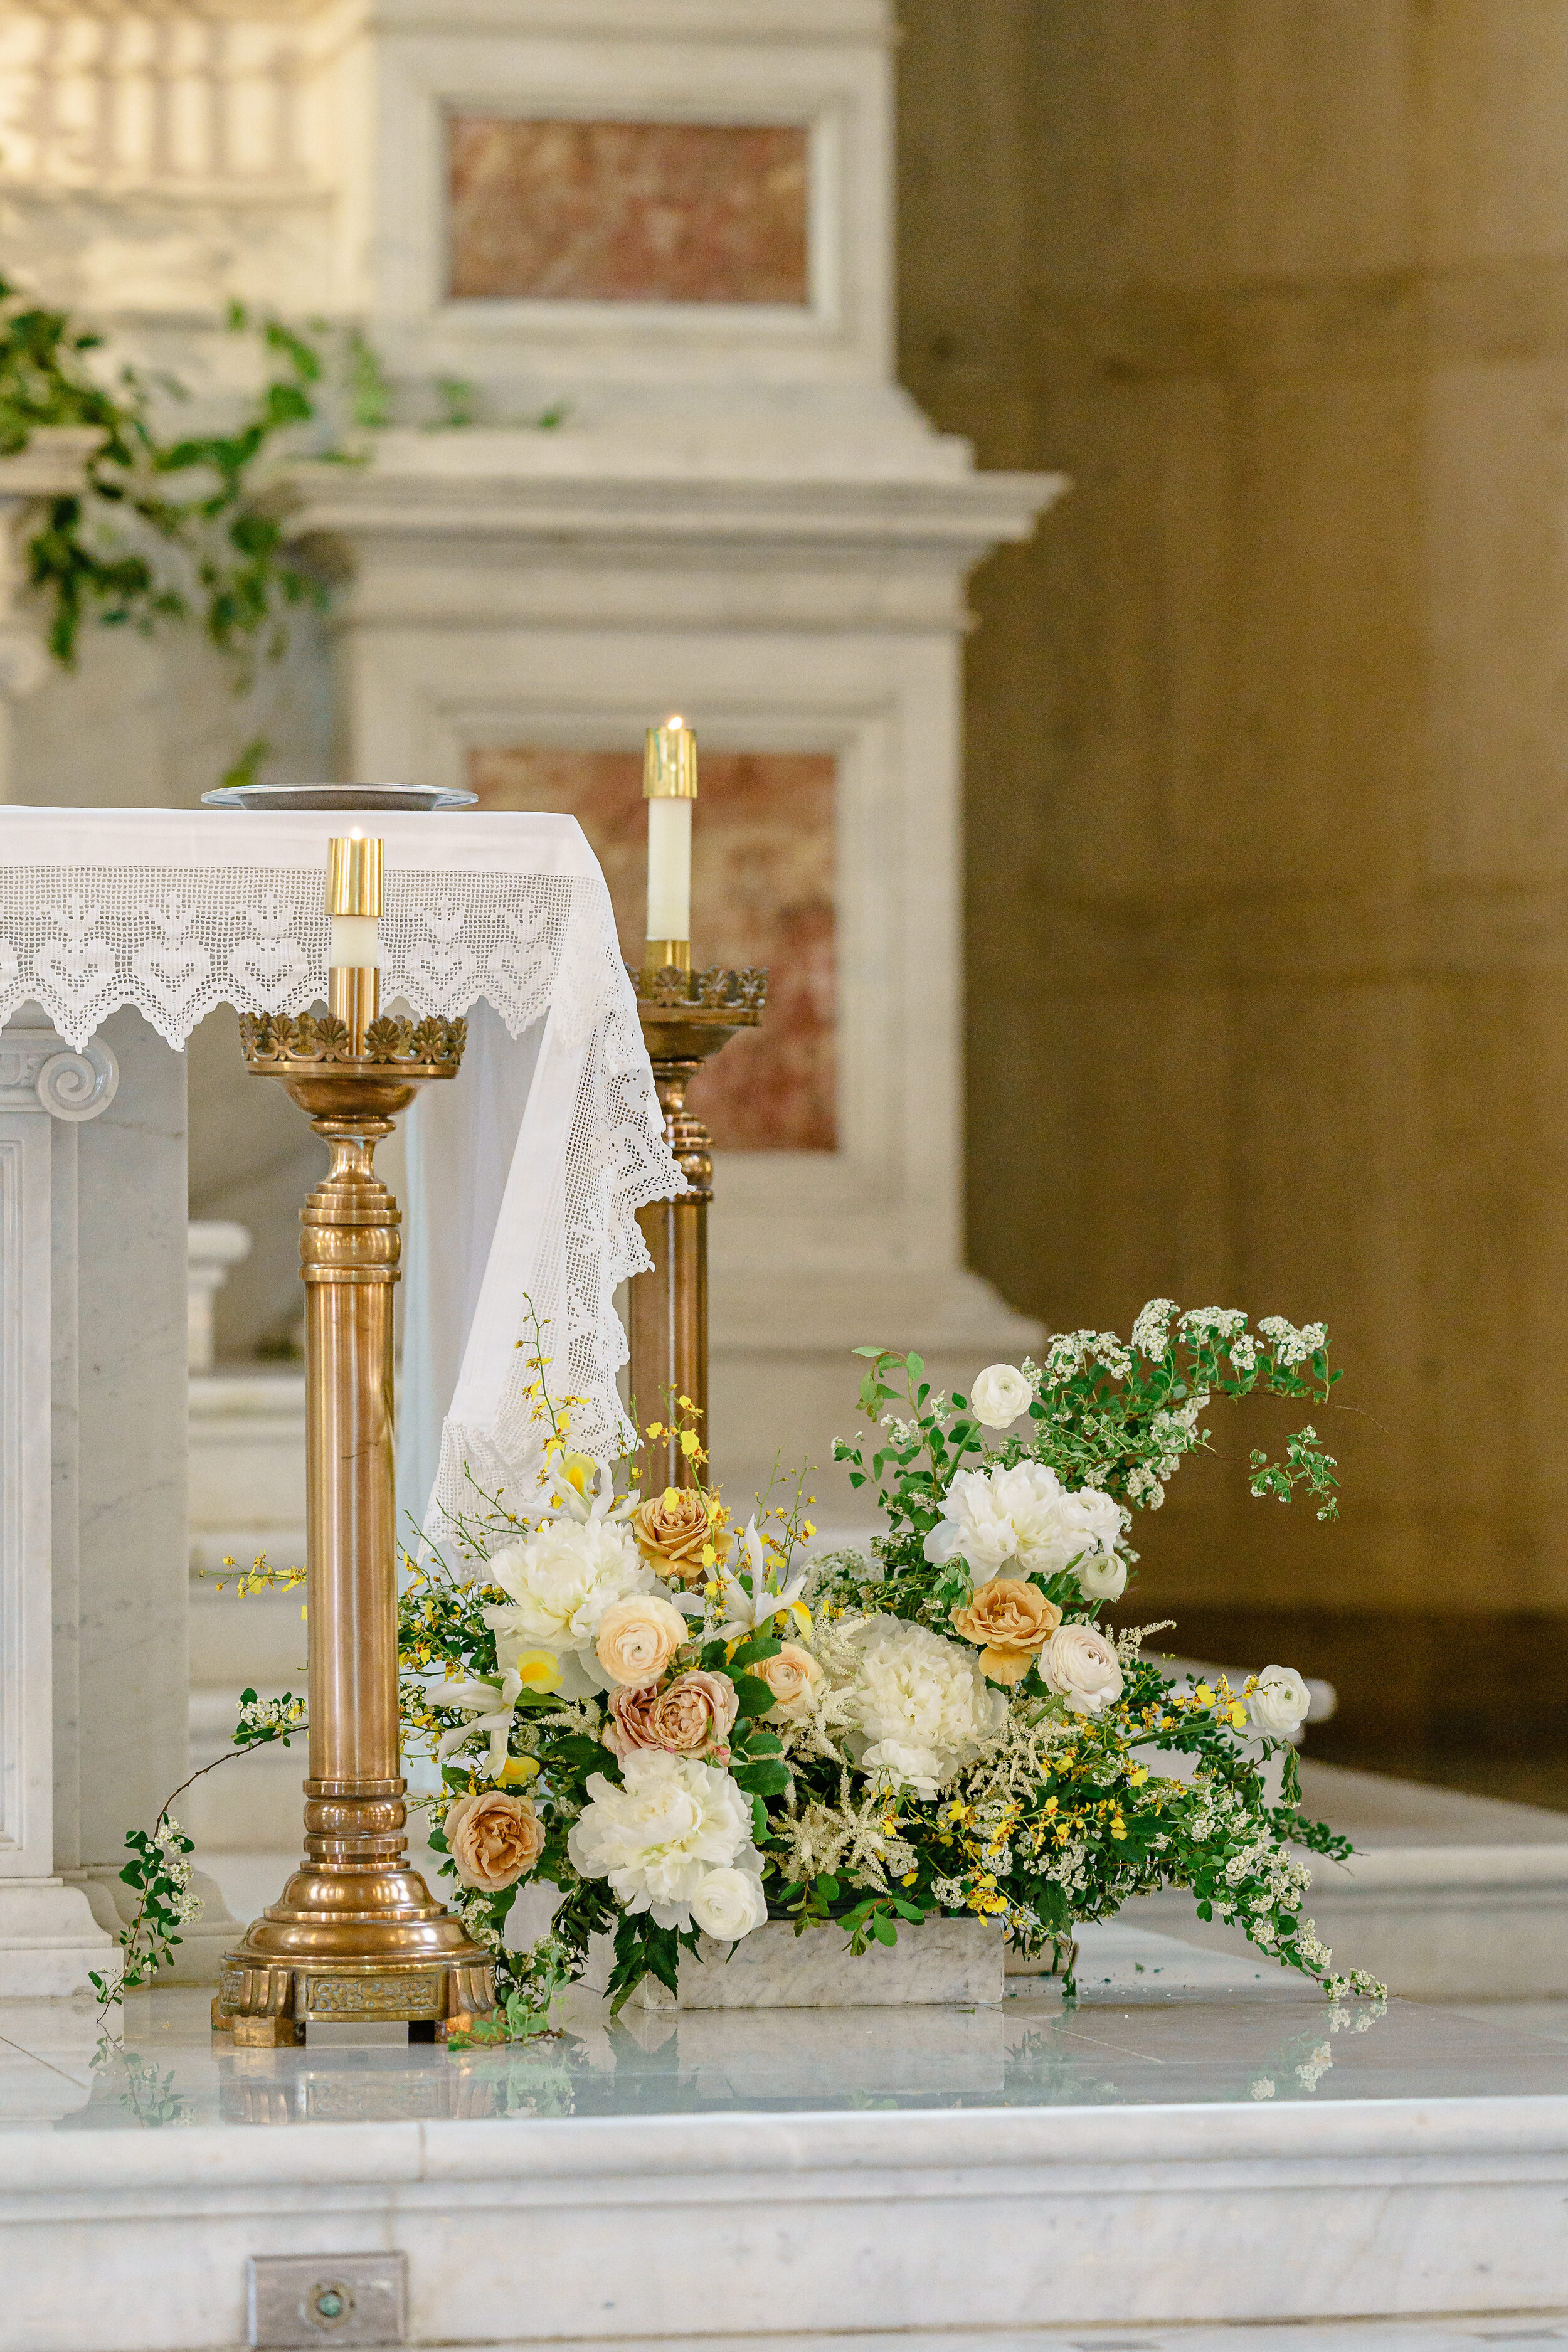 Timeless catholic wedding details